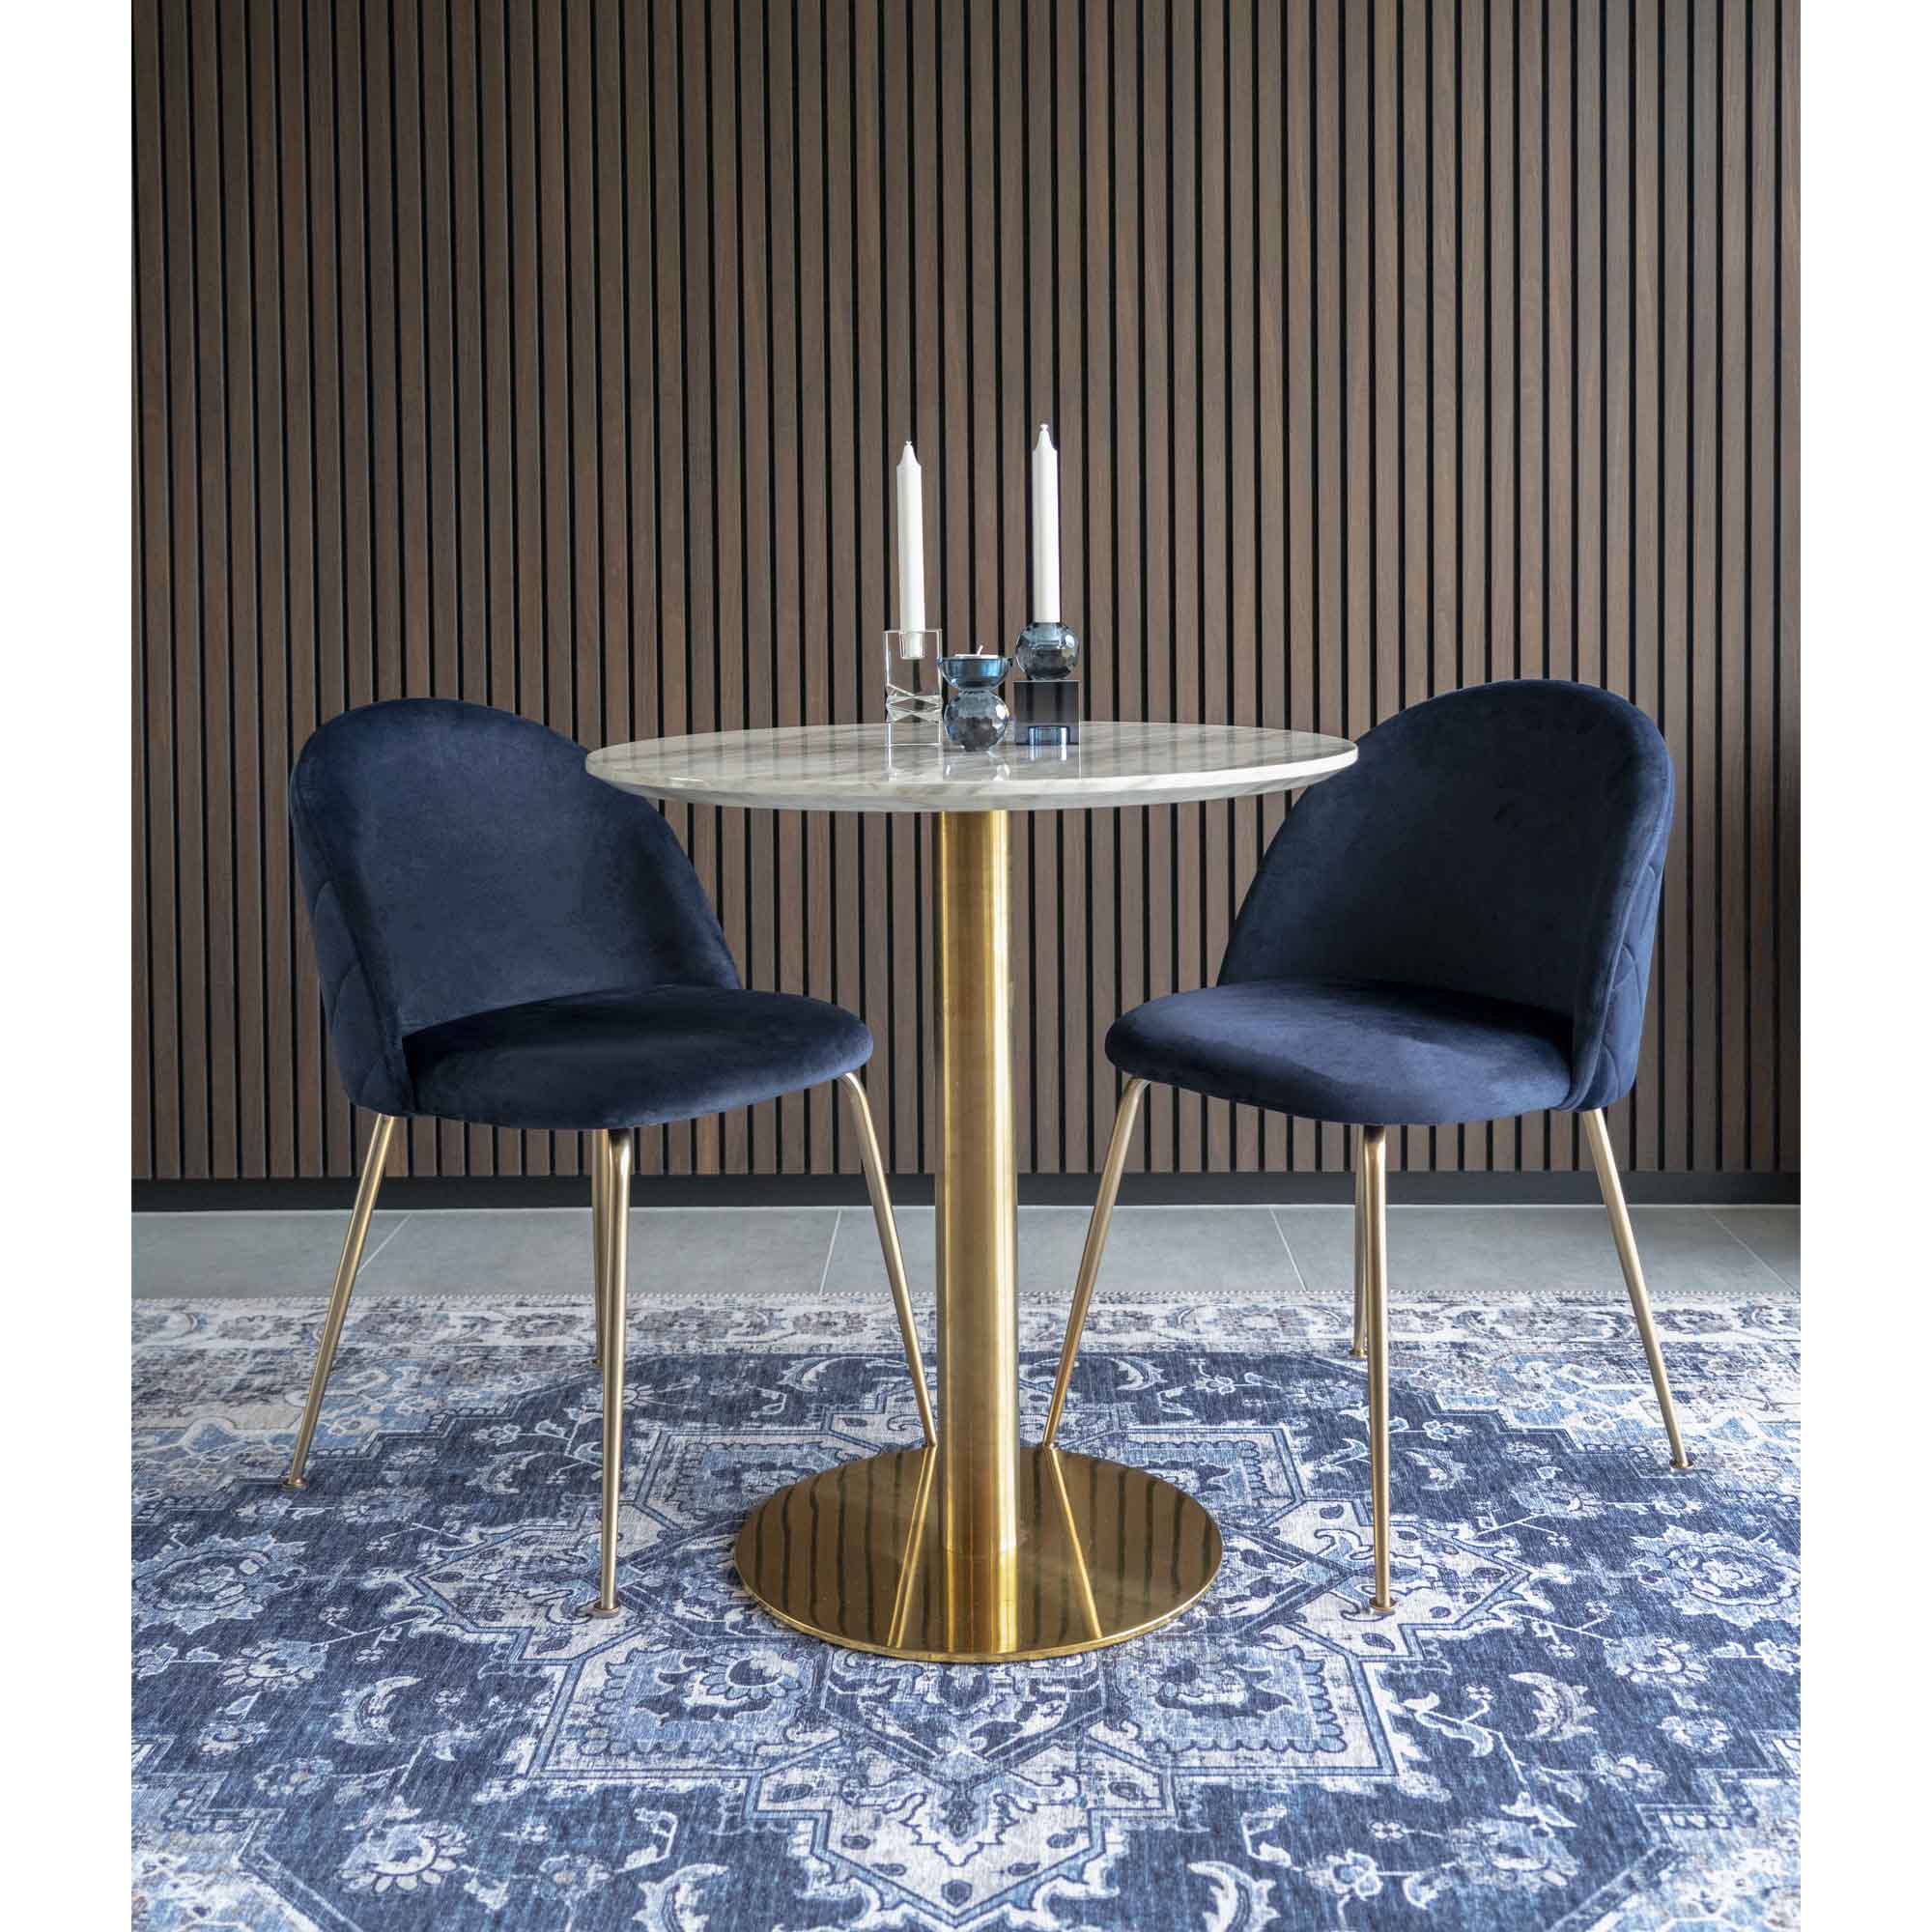 Geneve Spisebordsstol - Spisebordsstol I Velour, Blå Med Ben I Messing Look, Hn1205 ⎮ Sæt af 2 stk. ⎮ 5713917001484 ⎮ 1001251 